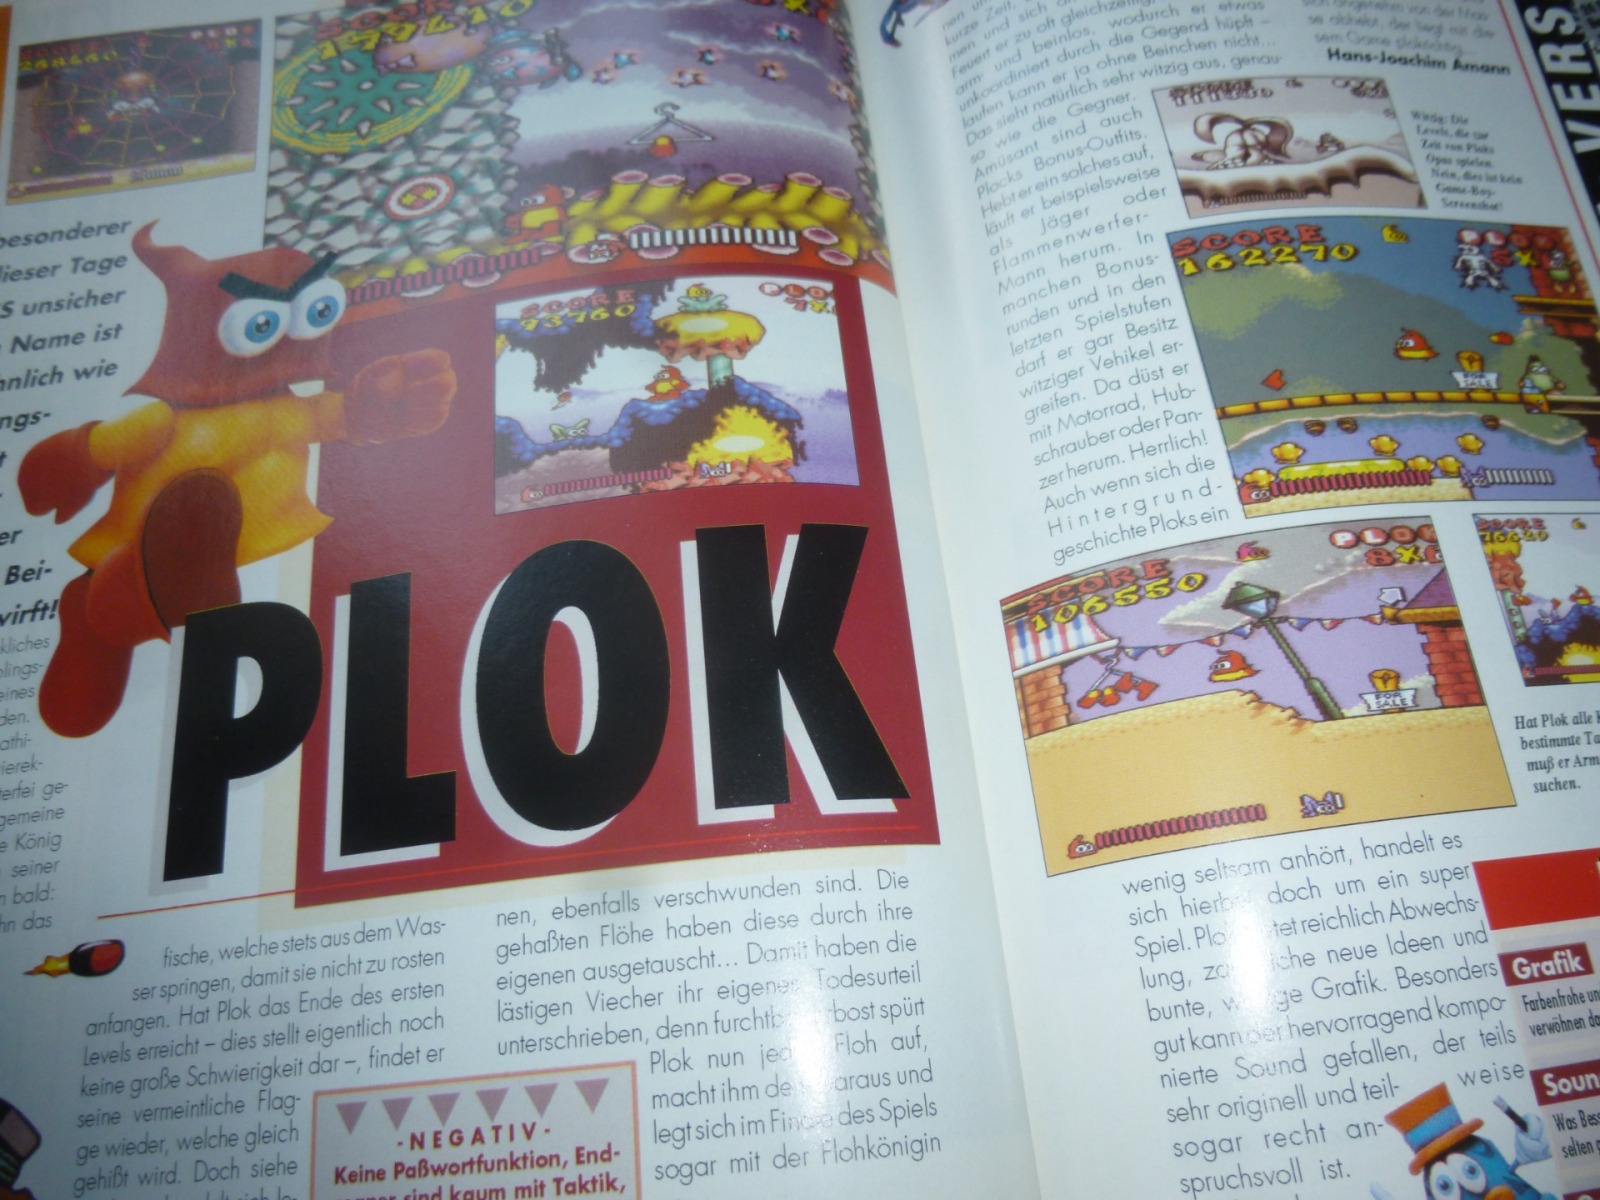 TOTAL Das unabhängige Magazin - 100% Nintendo - Ausgabe 12/93 1993 27